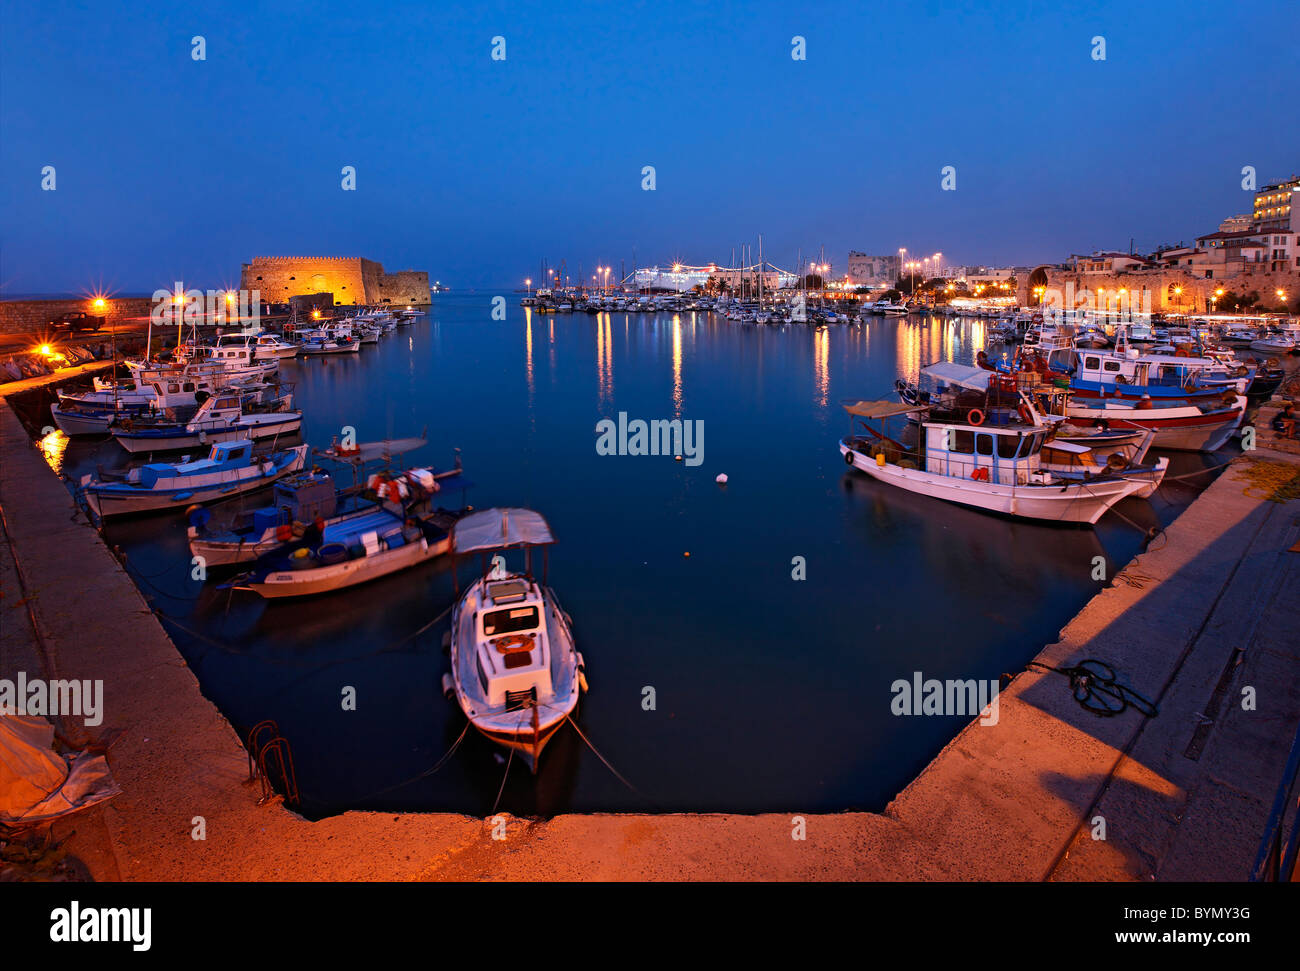 Nachtansicht des alten venezianischen Hafen von Heraklion, Kreta, Griechenland. Auf der linken Seite sehen Sie das Schloss Kule. Kreta, Griechenland. Stockfoto